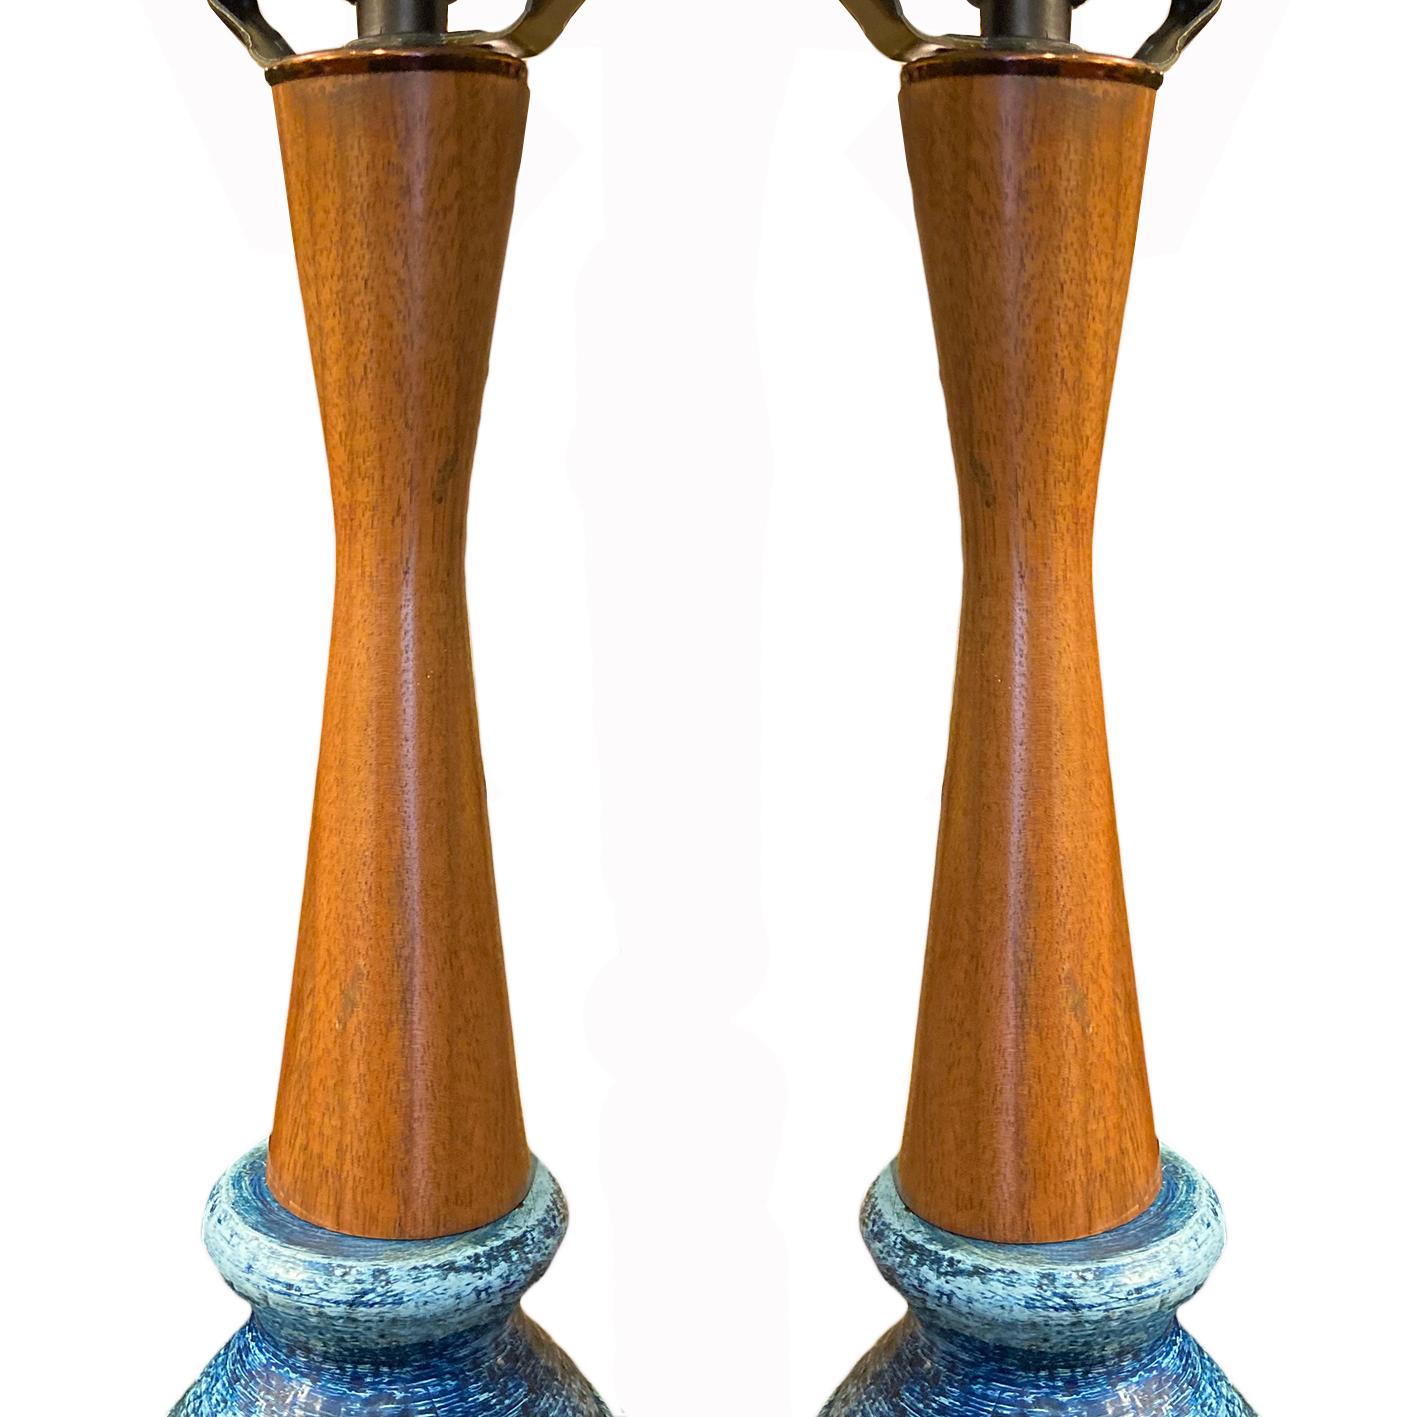 Une paire de lampes de table bleues italiennes des années 1950 avec des tiges en bois.

Mesures :
Hauteur du corps : 22,5